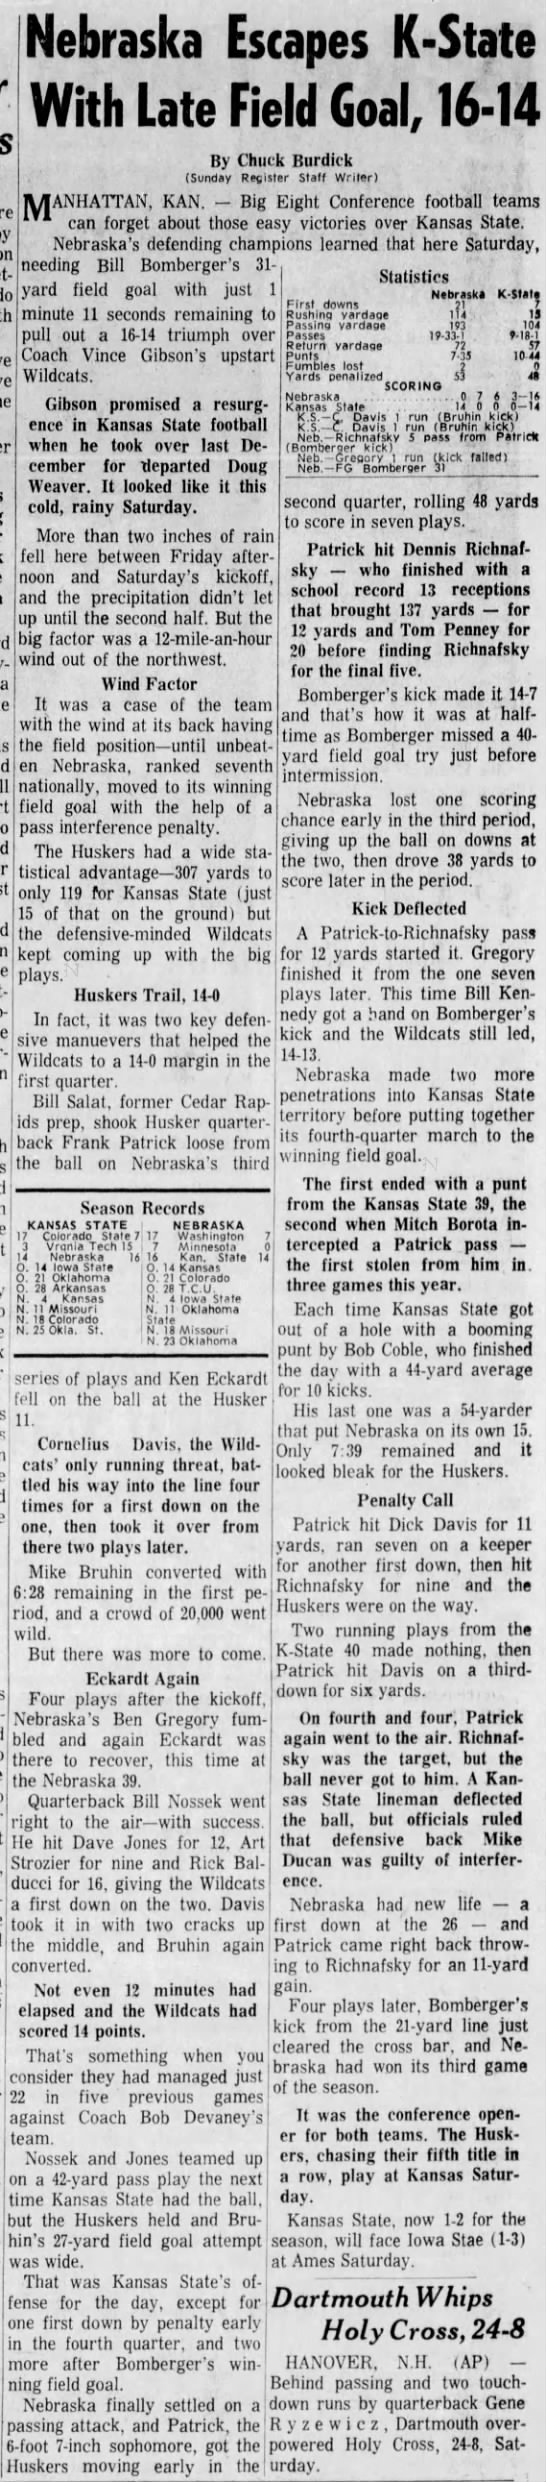 1967 Nebraska-Kansas State football, DMR - 